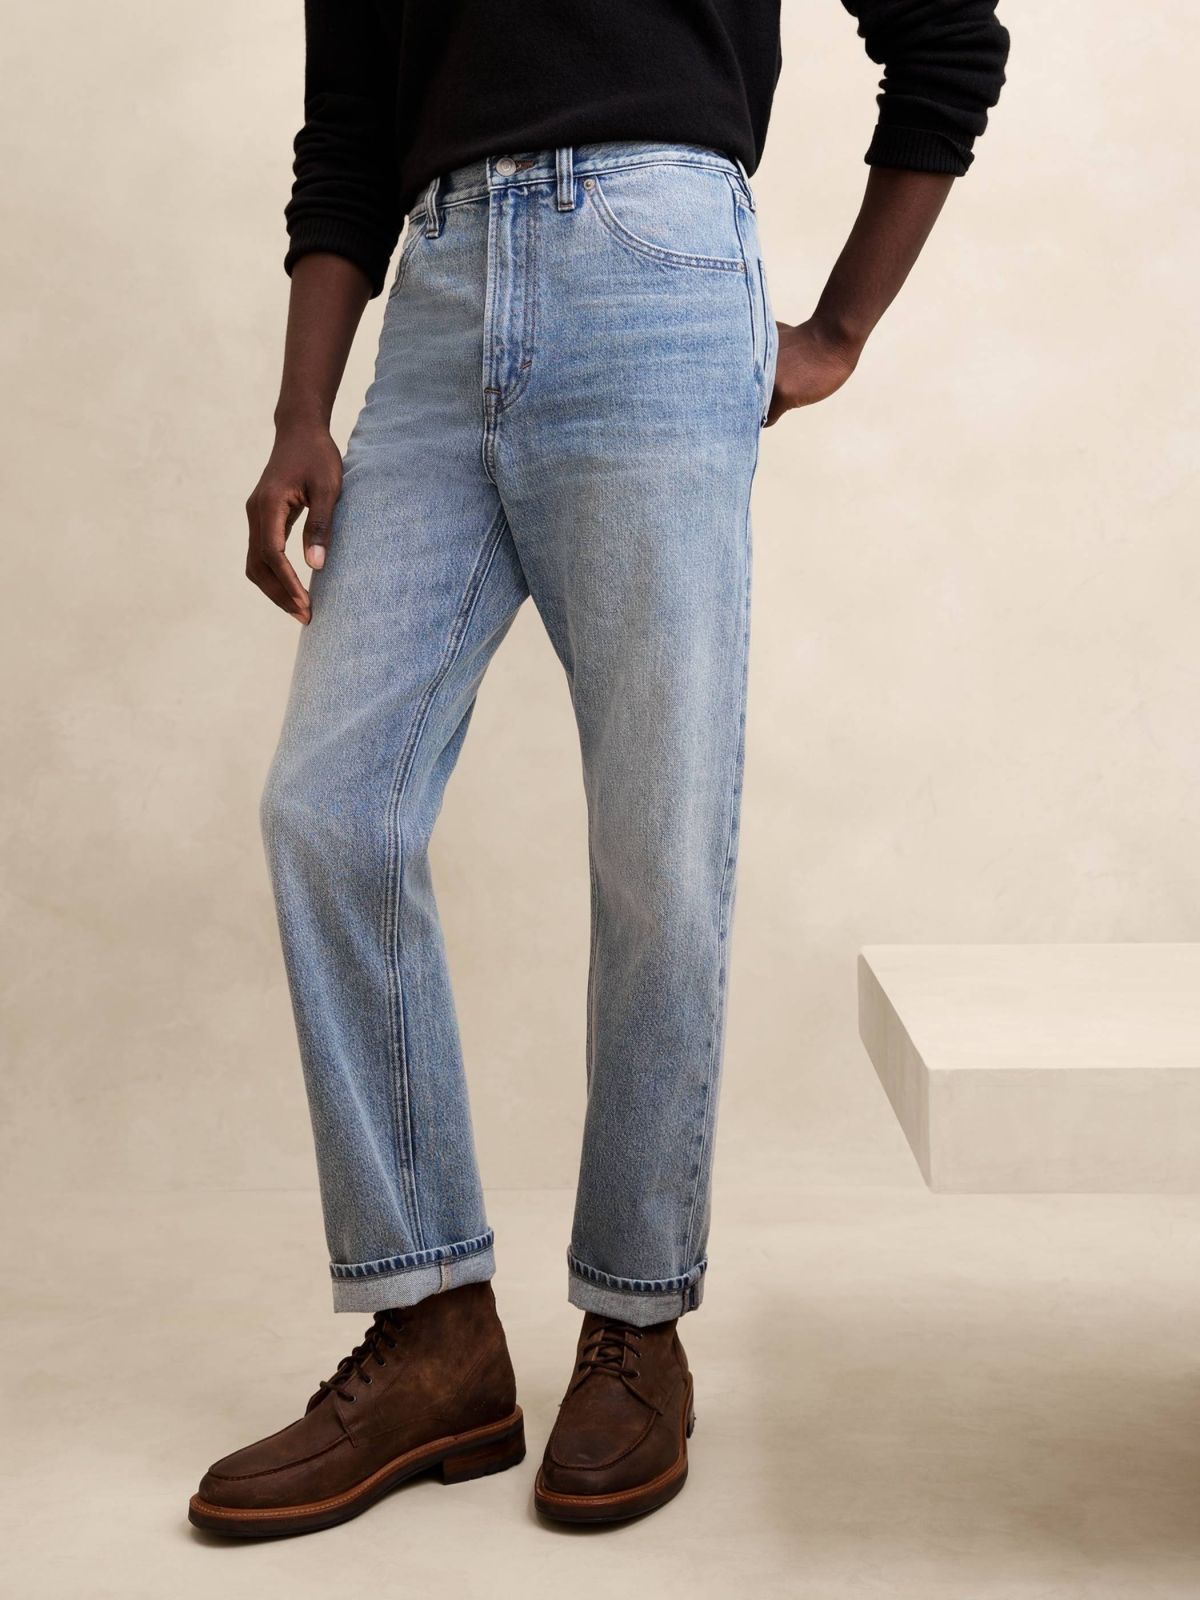  ג'ינס ארוך בגזרה ישרה 90S של BANANA REPUBLIC